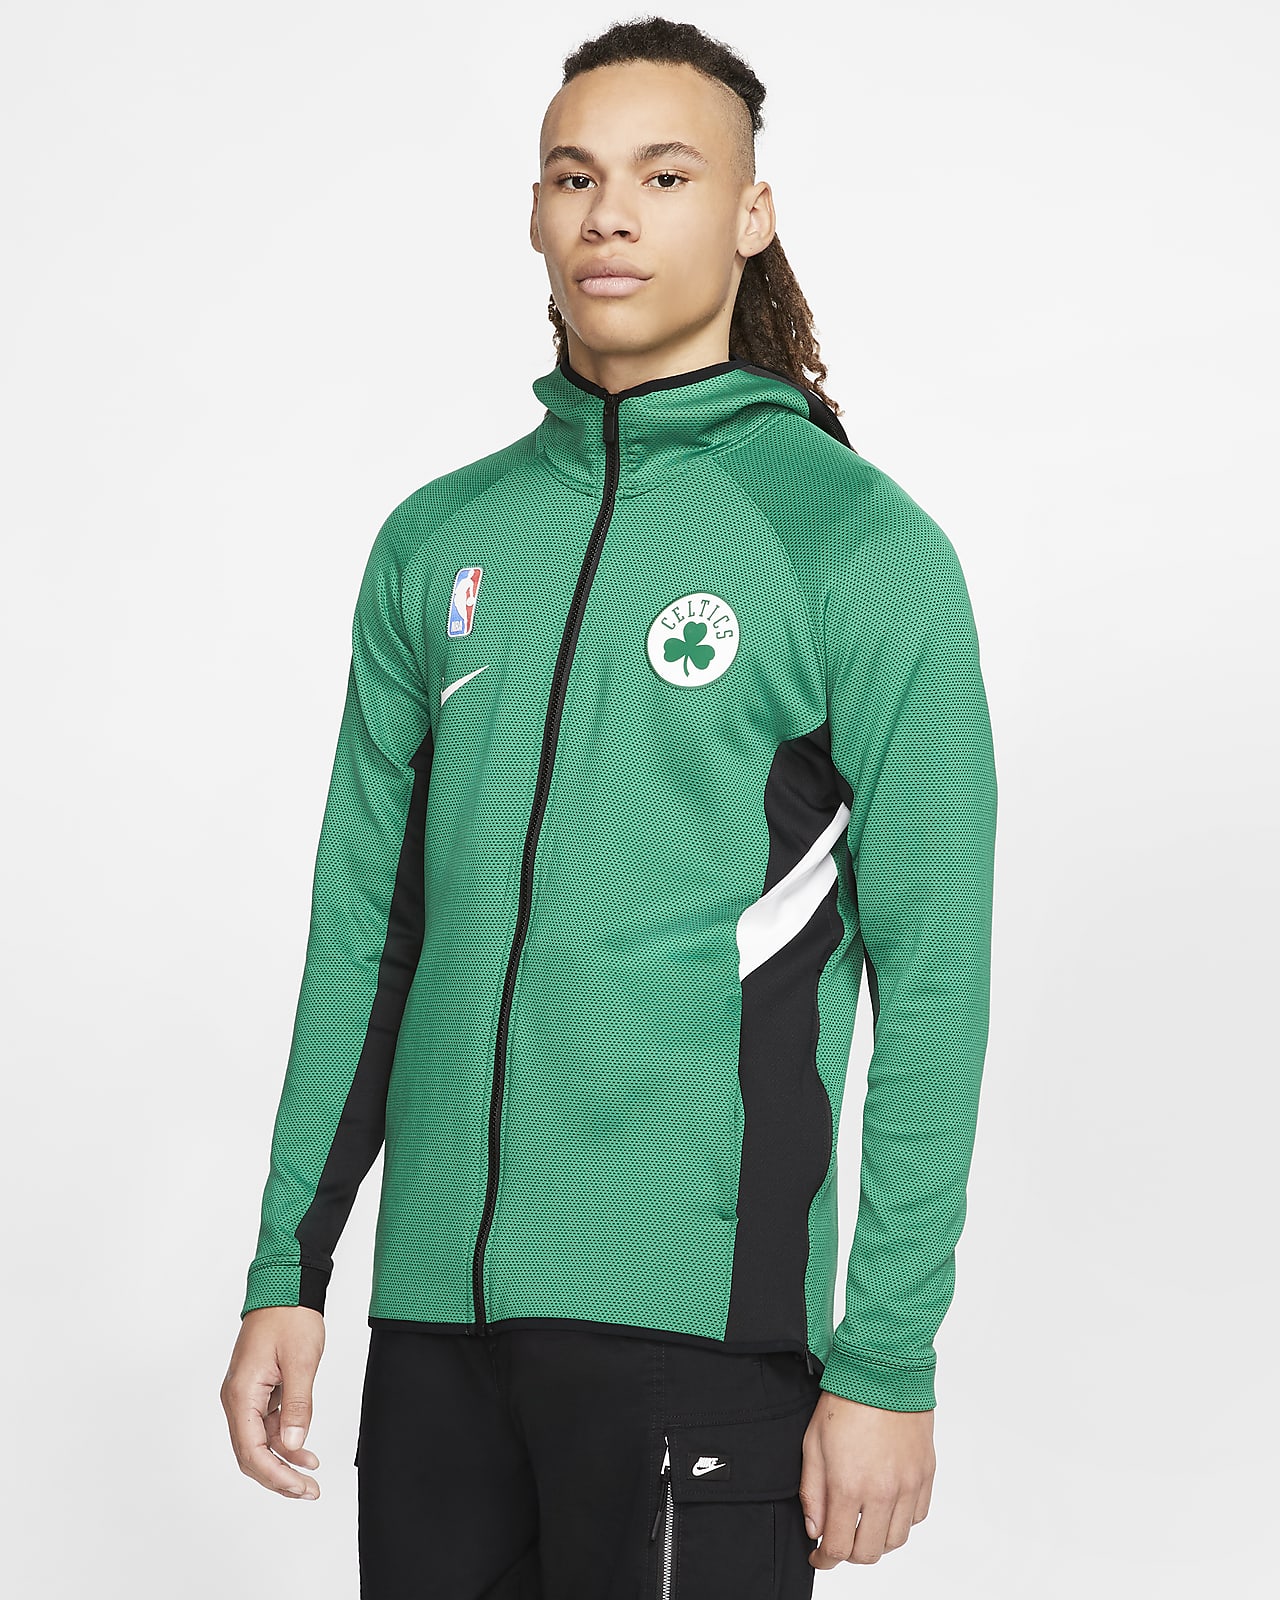 Boston Celtics Showtime Nike Therma Flex NBA-hettejakke til herre